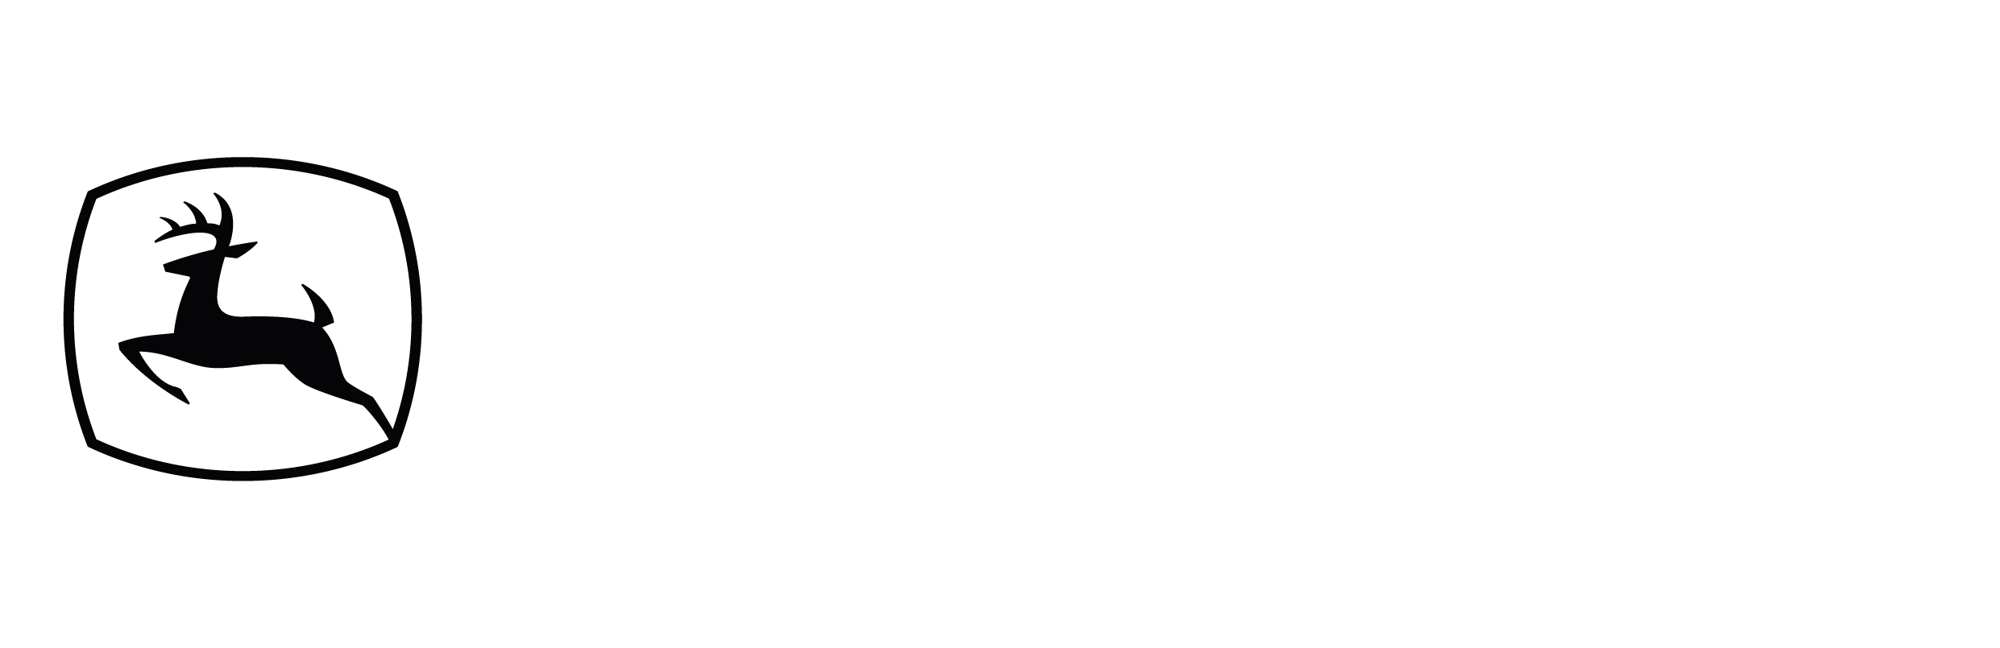 John_Deere_Weißgrau_test_2